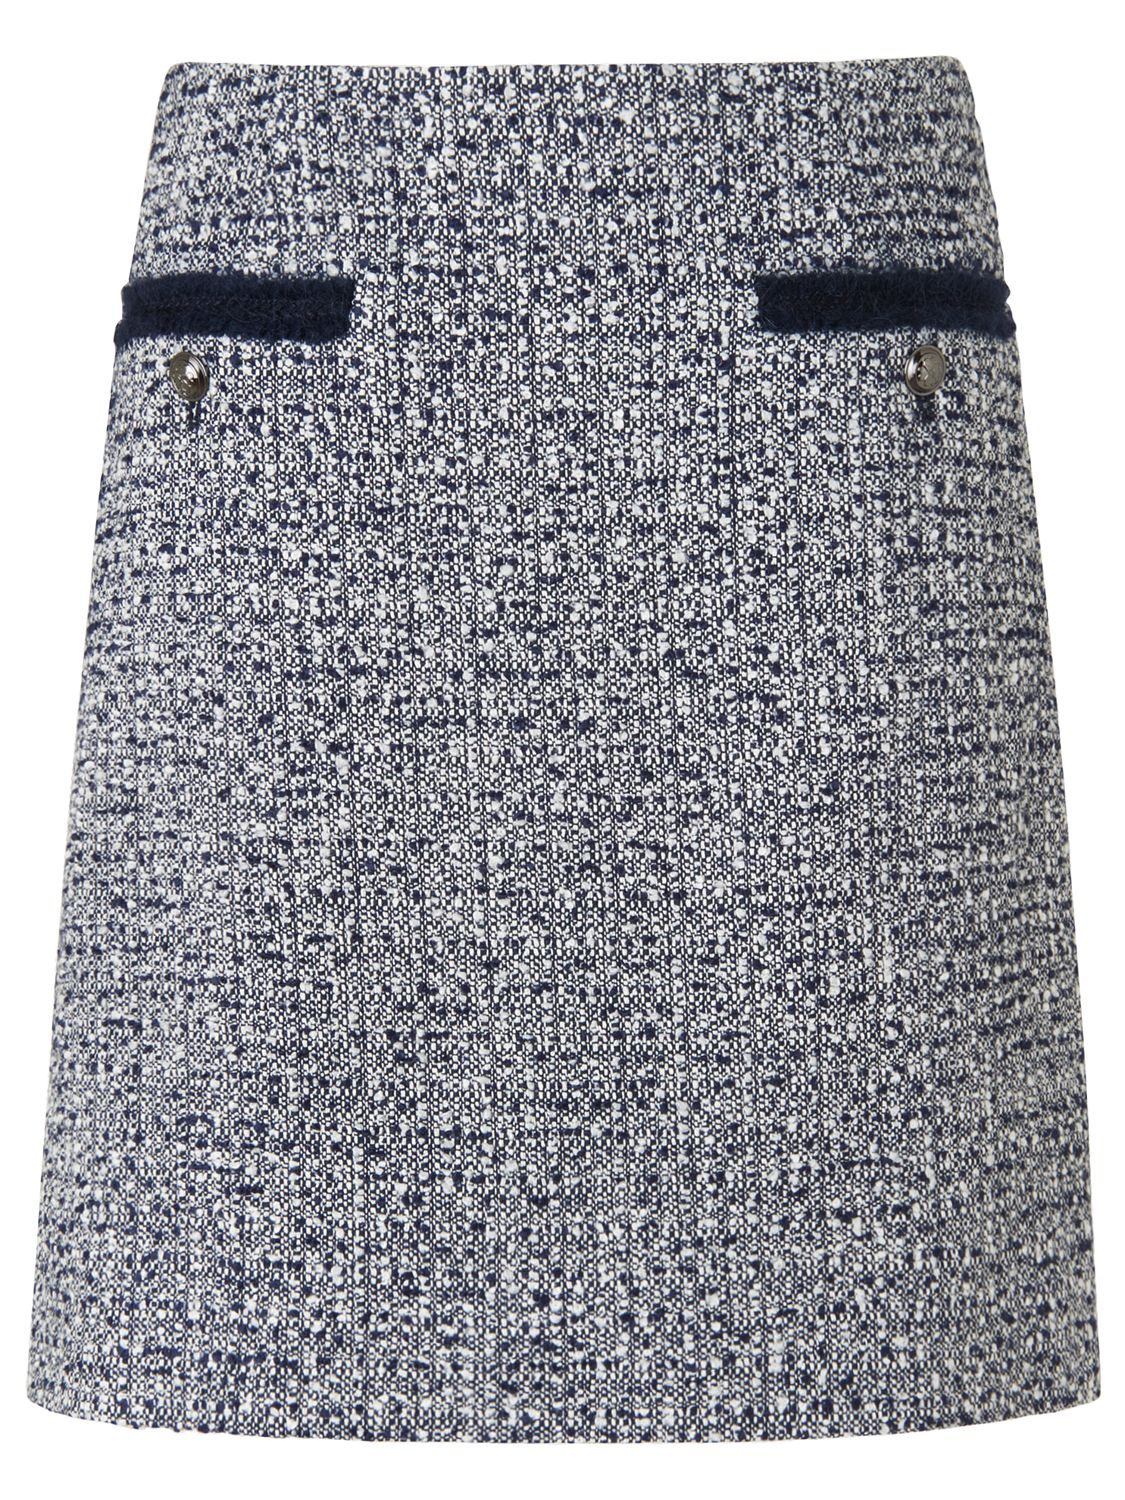 L.K. Bennett Astrala Tweed Skirt, Multi at John Lewis & Partners